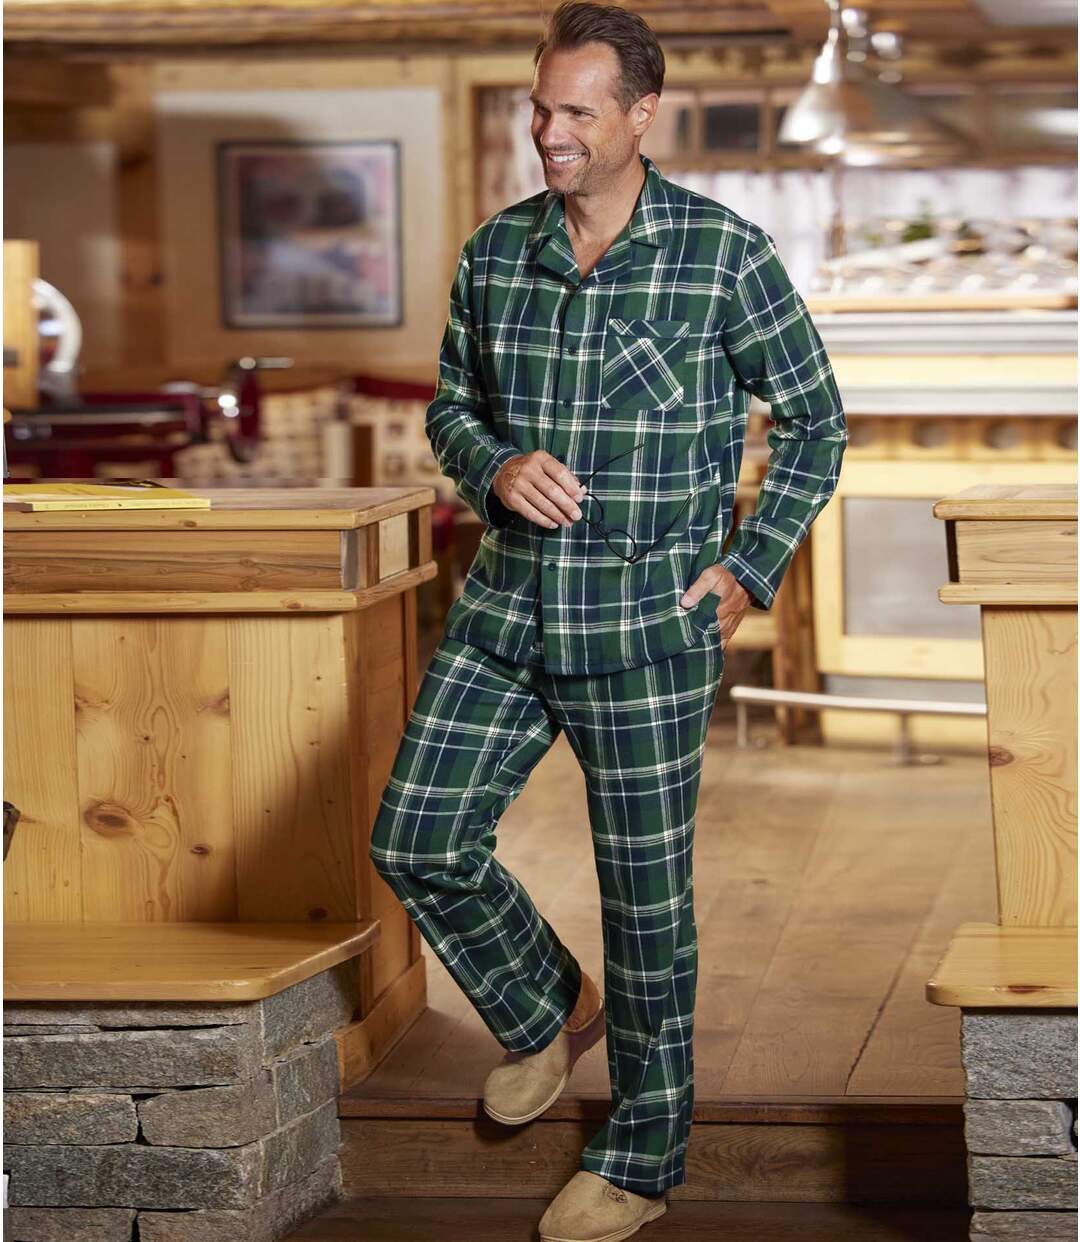 Autentyczna, flanelowa piżama w szkocki wzór Atlas For Men